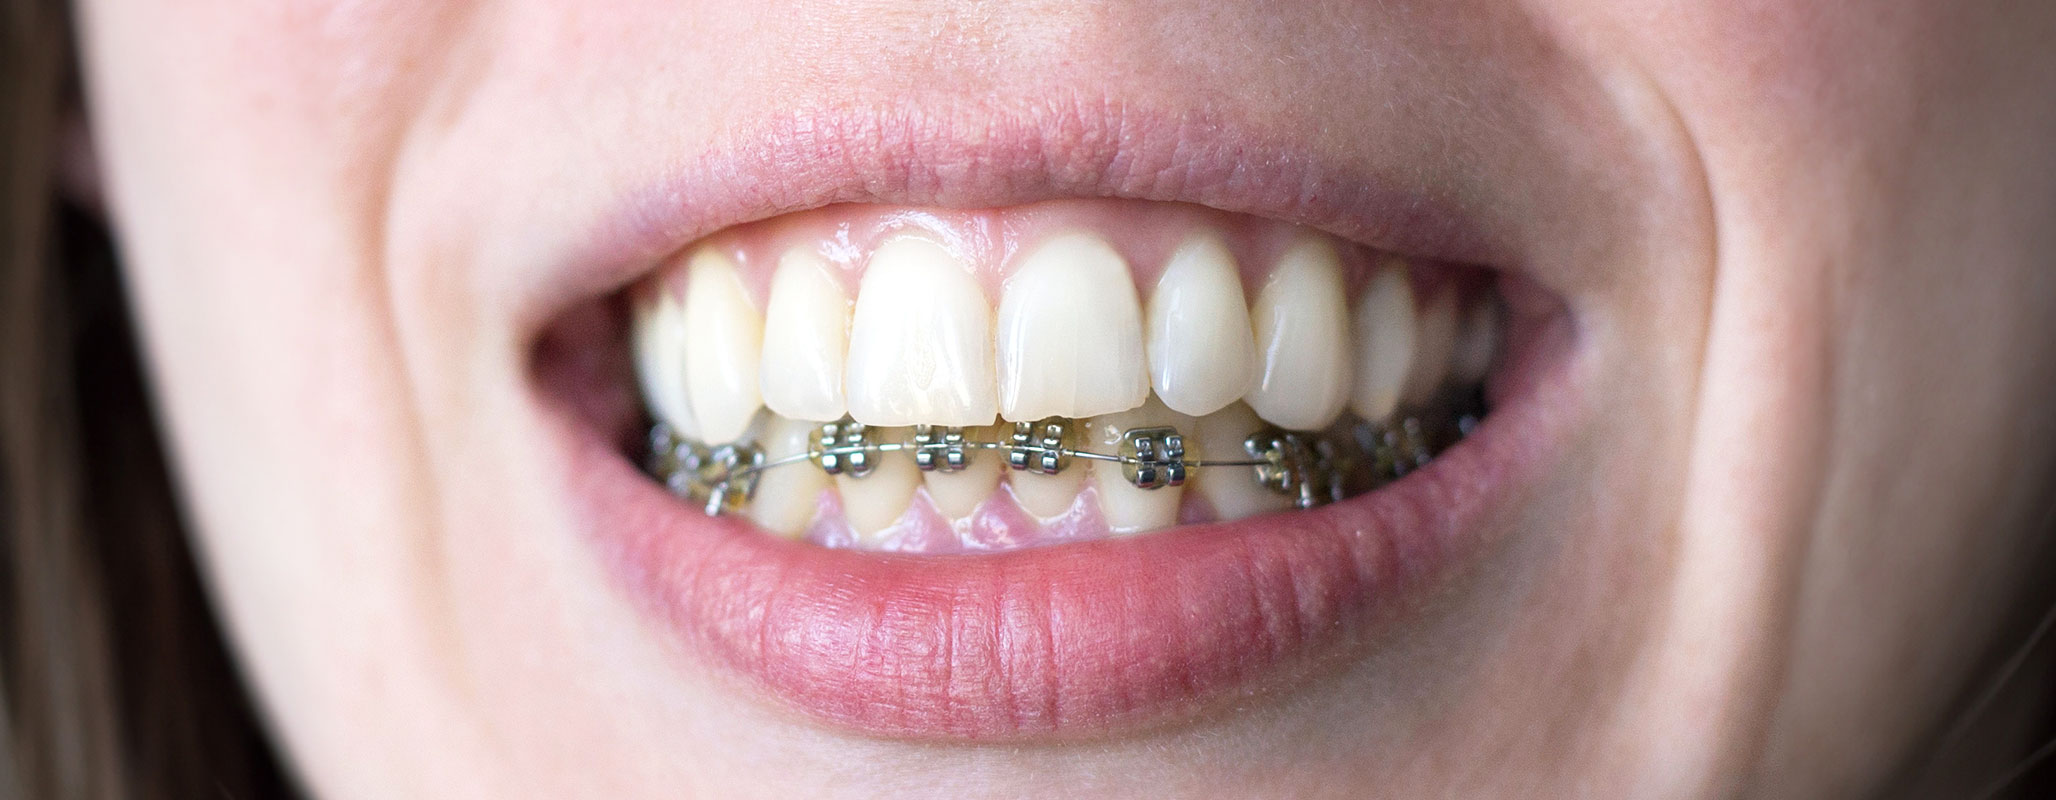 上の歯列のみ裏側にリンガルブラケット矯正装置をつける治療方法